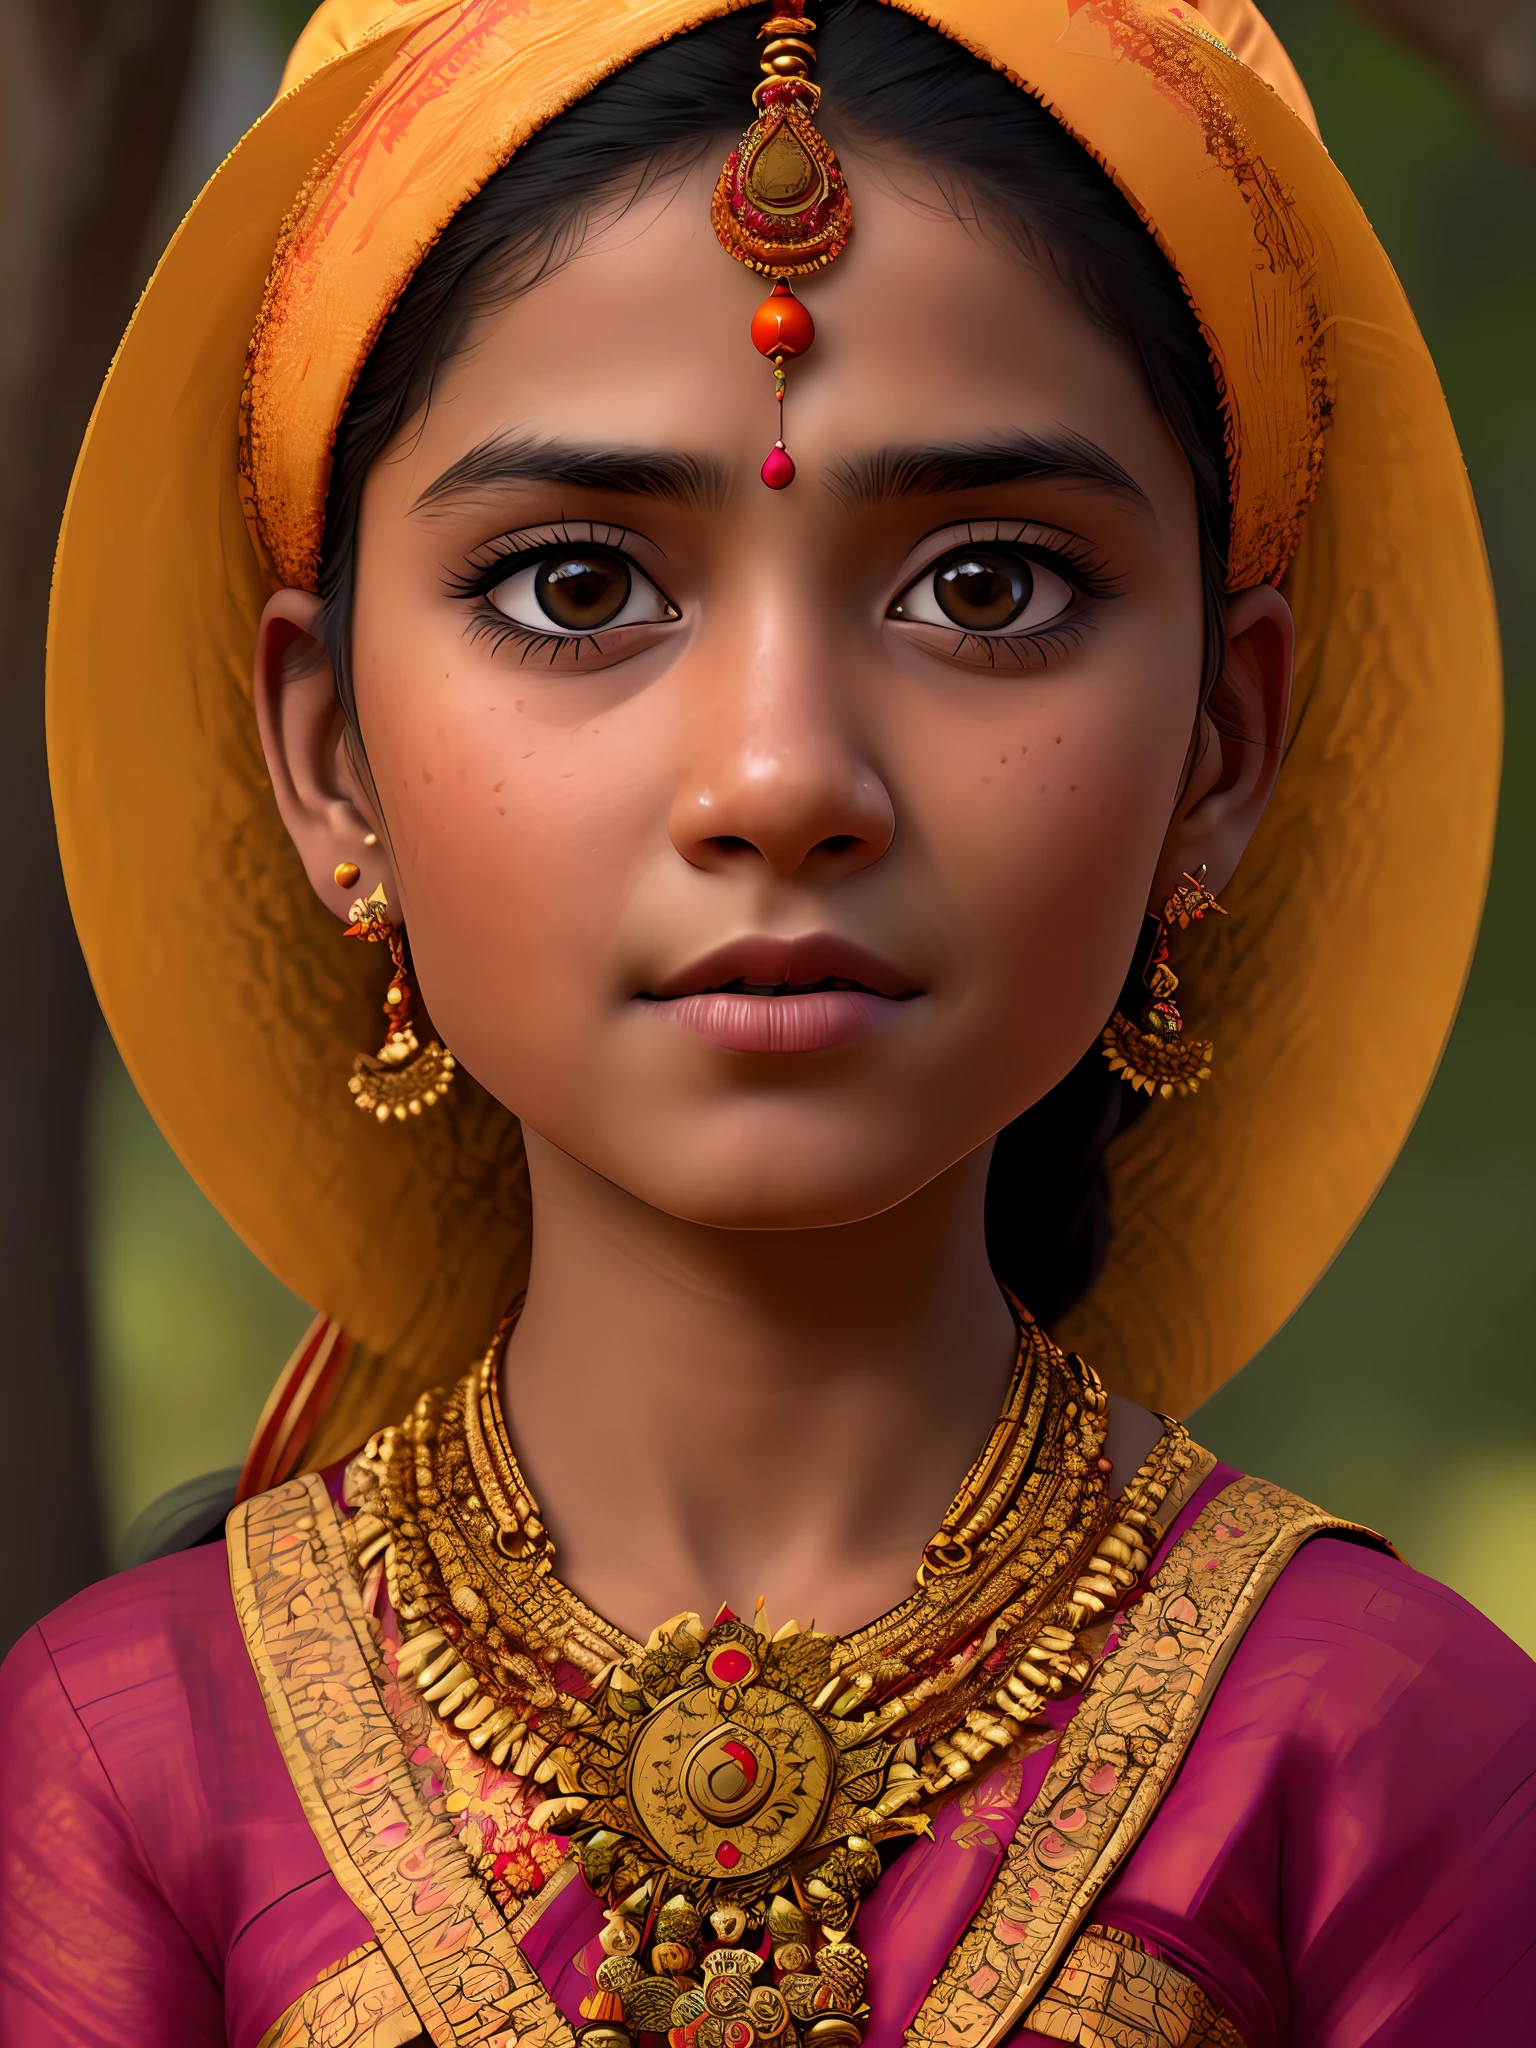 Портрет индуистской девушки в типичных костюмах., 4к текстуры, HDR, сложный, очень подробный, острый фокус, сверхдетализированный